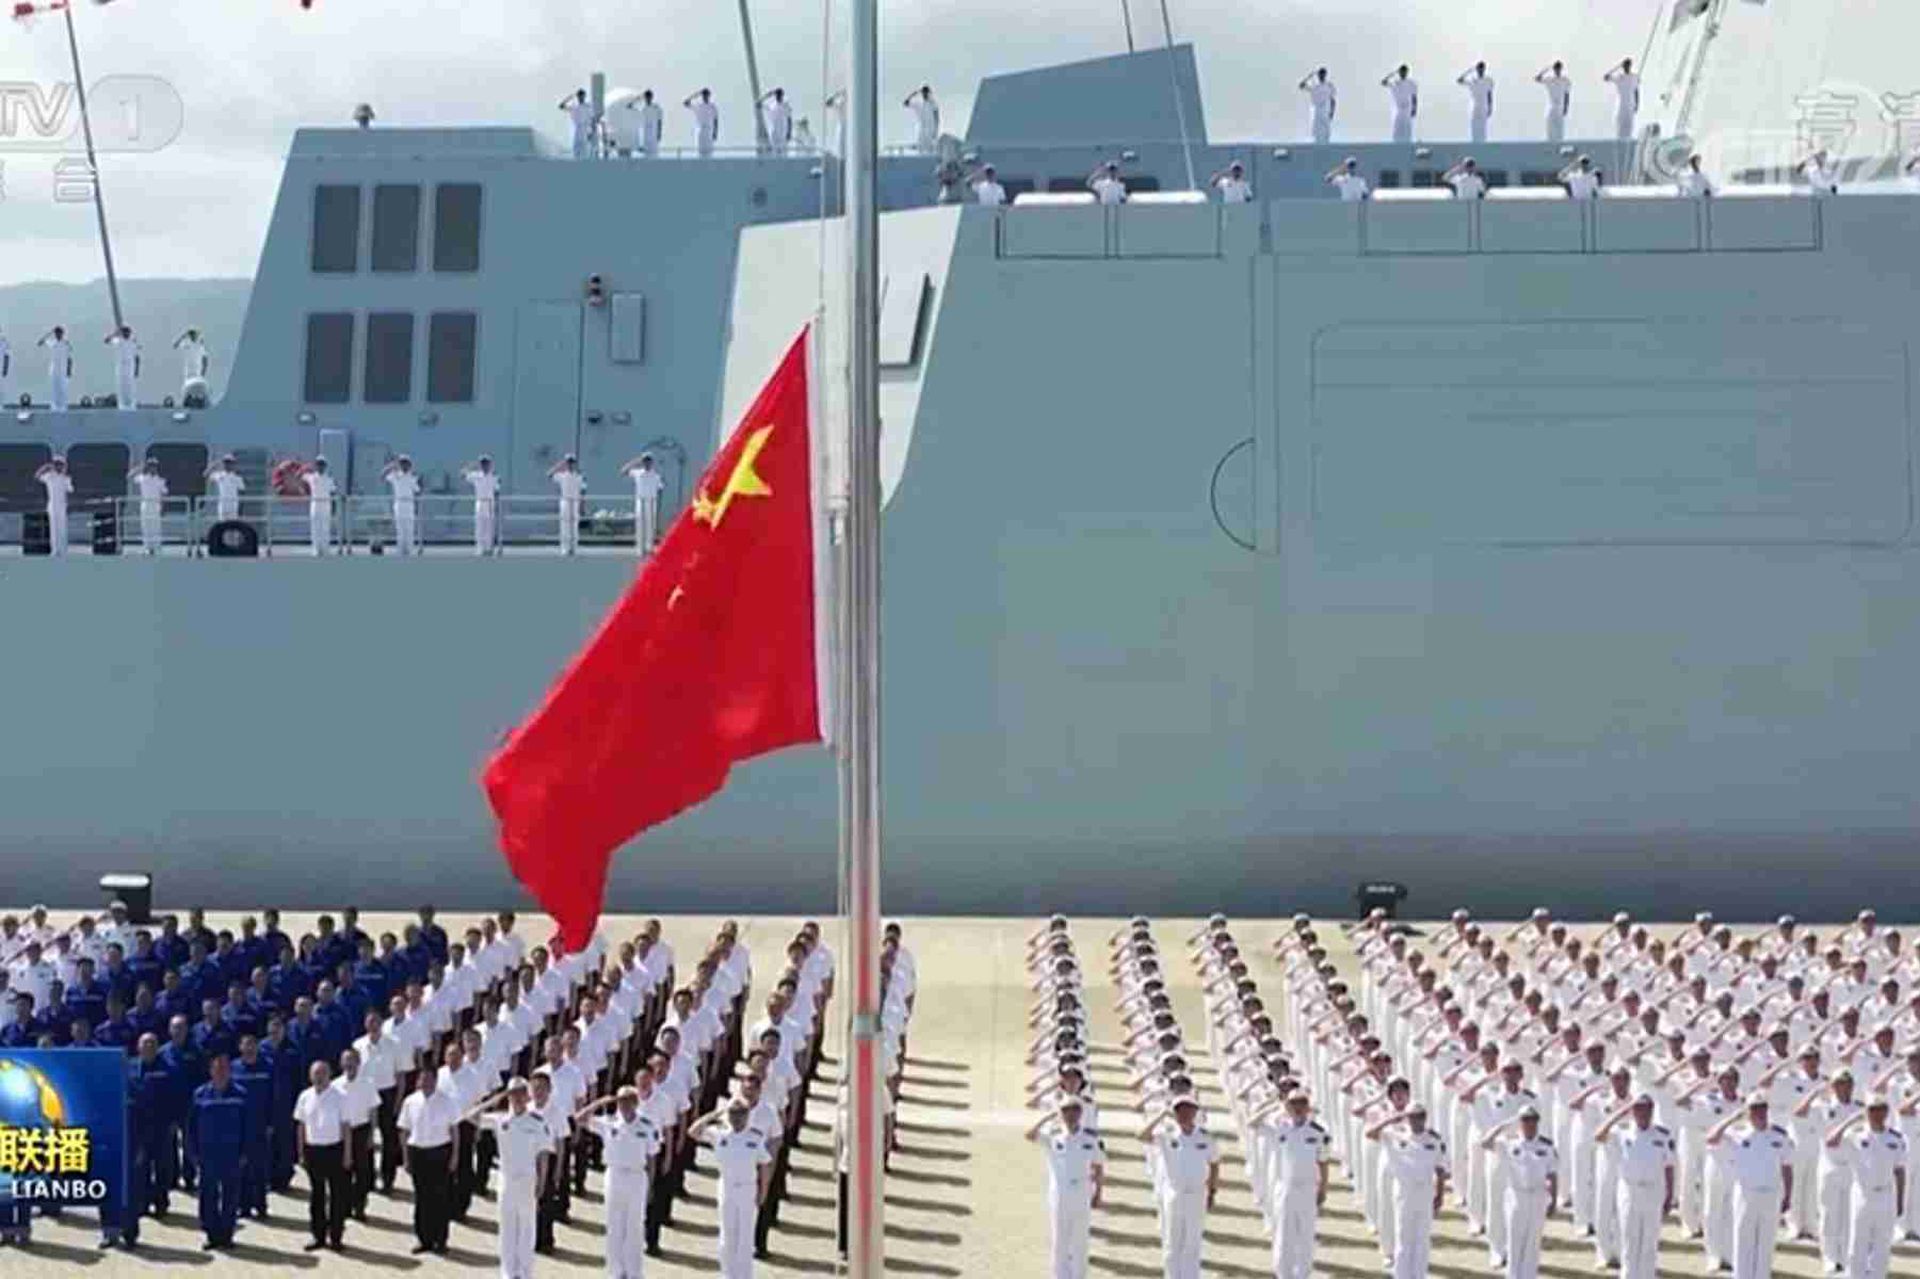 中国央视新闻公开入列现场画面。图为来自中国海军部队和舰艇科研生产单位的代表在舰艇前列队敬礼。（中国央视截图）